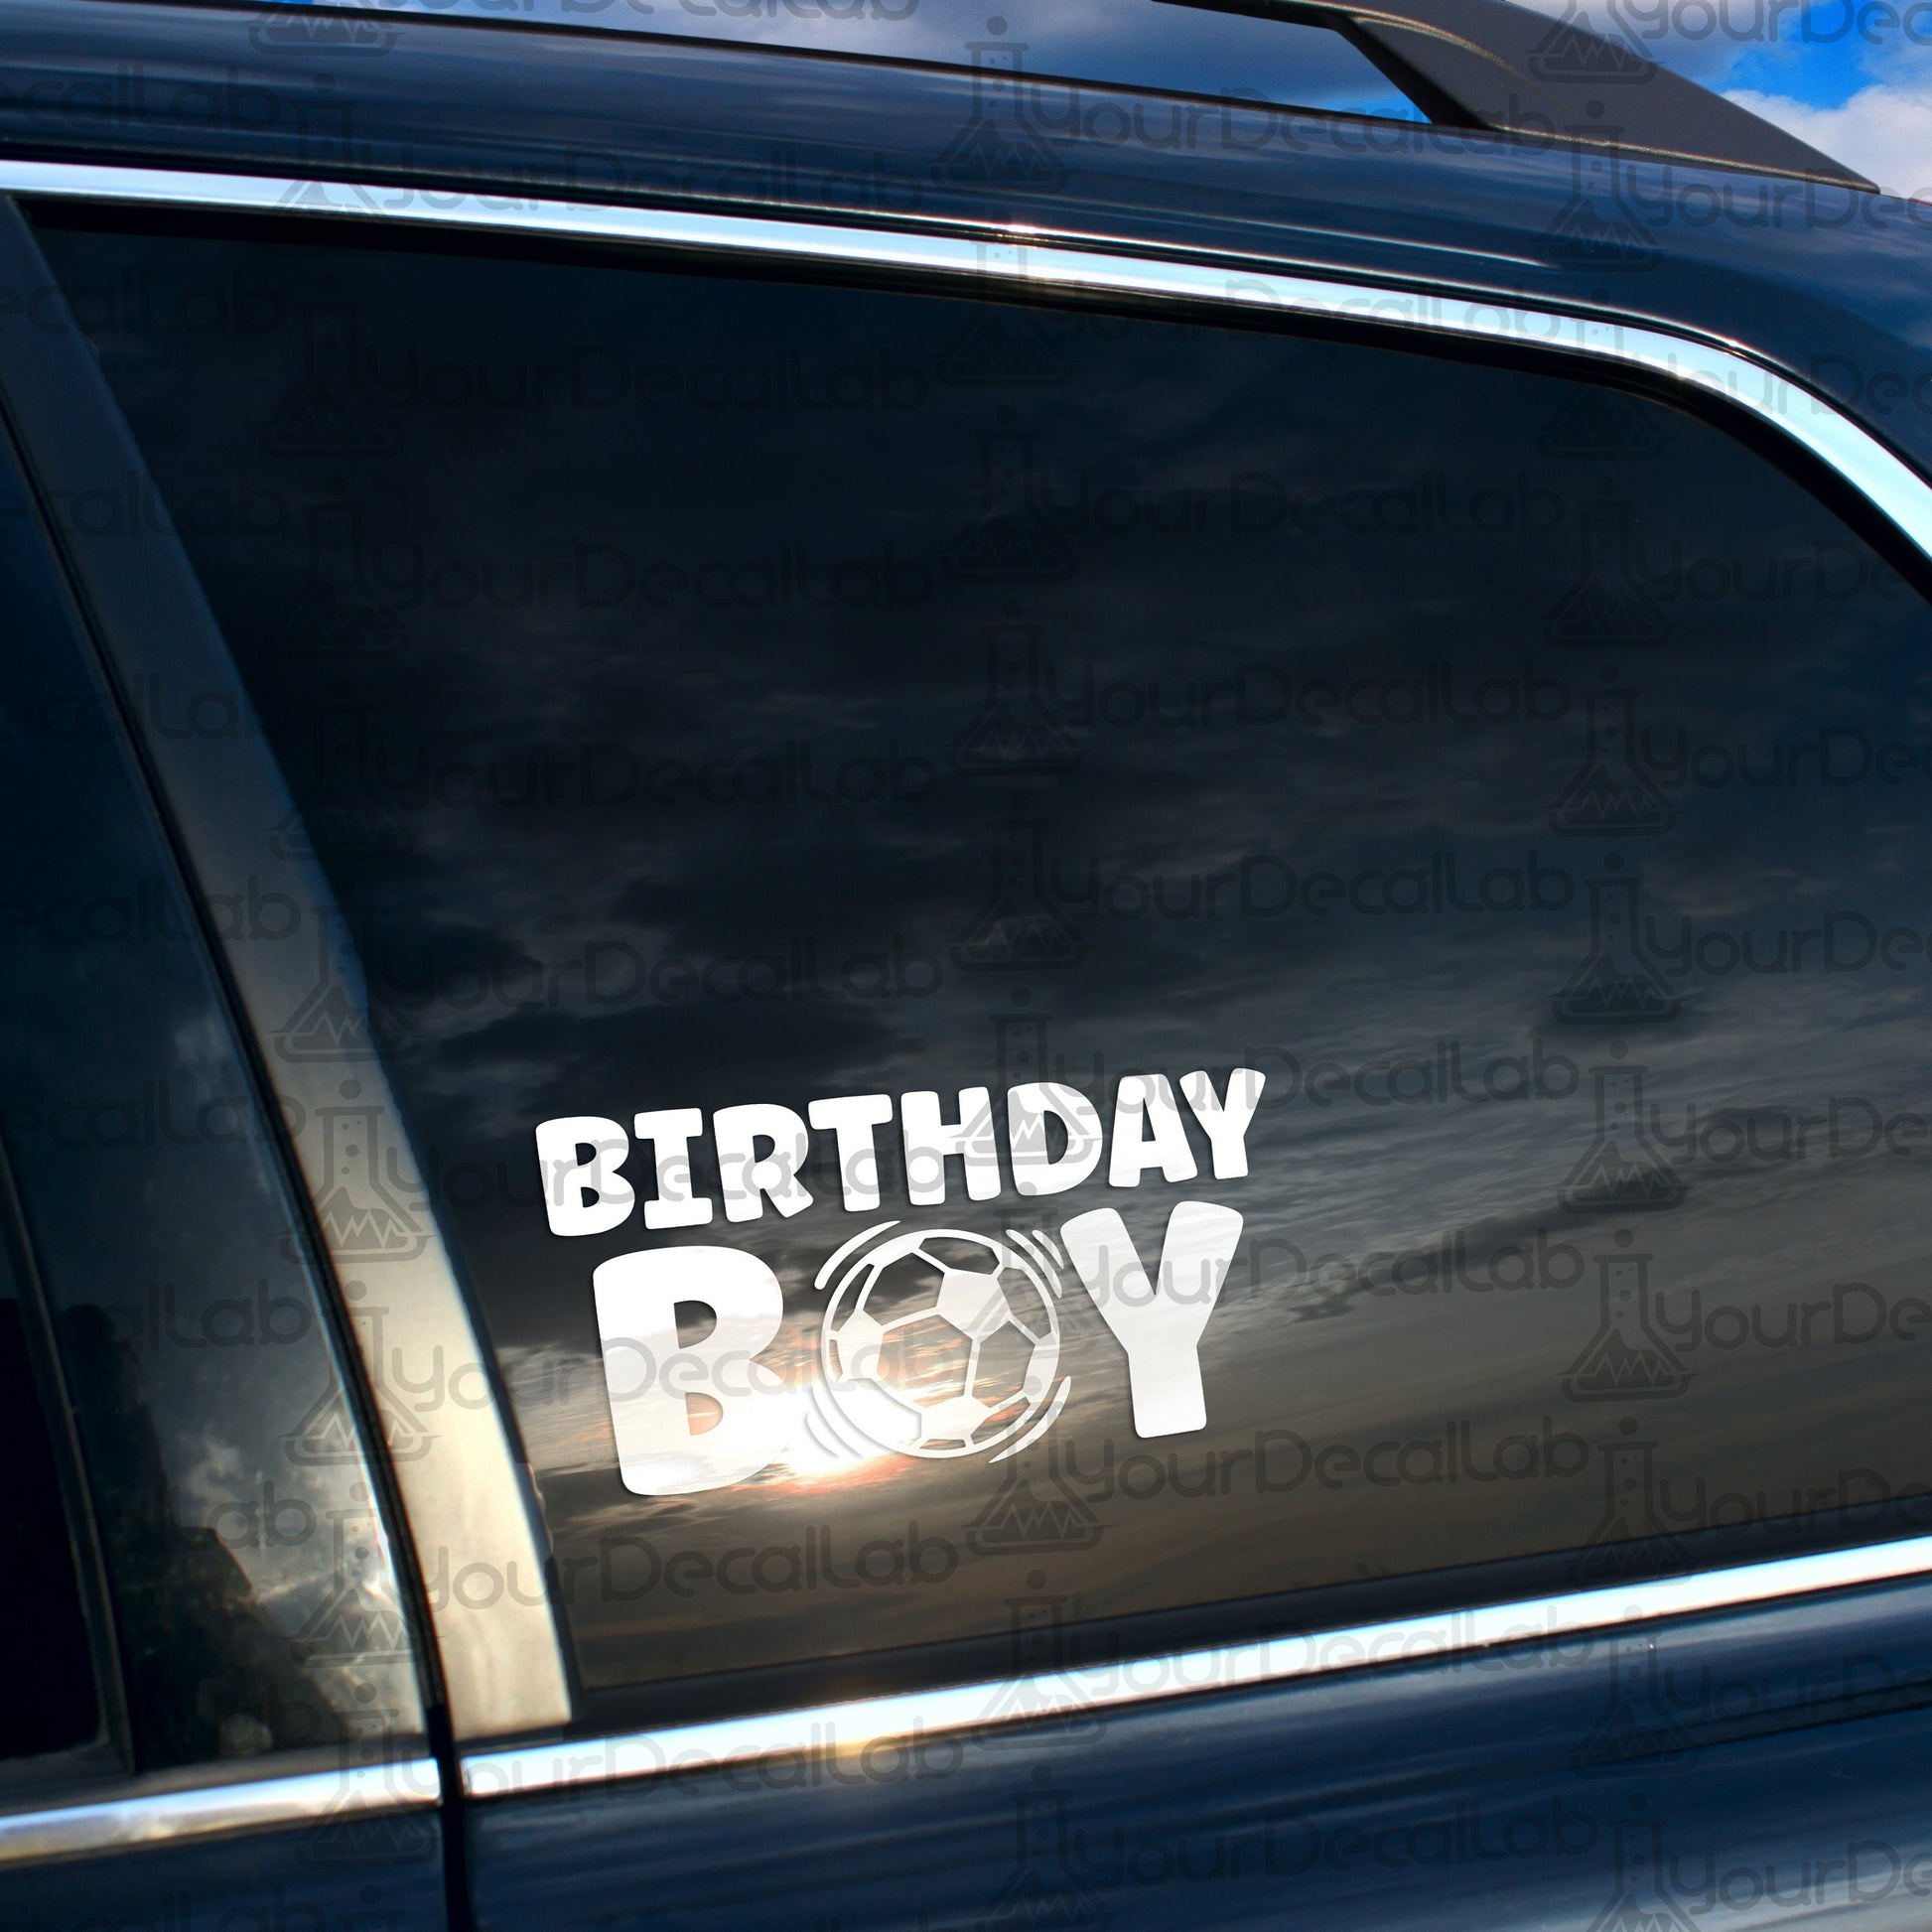 a car with a sticker that says birthday boy